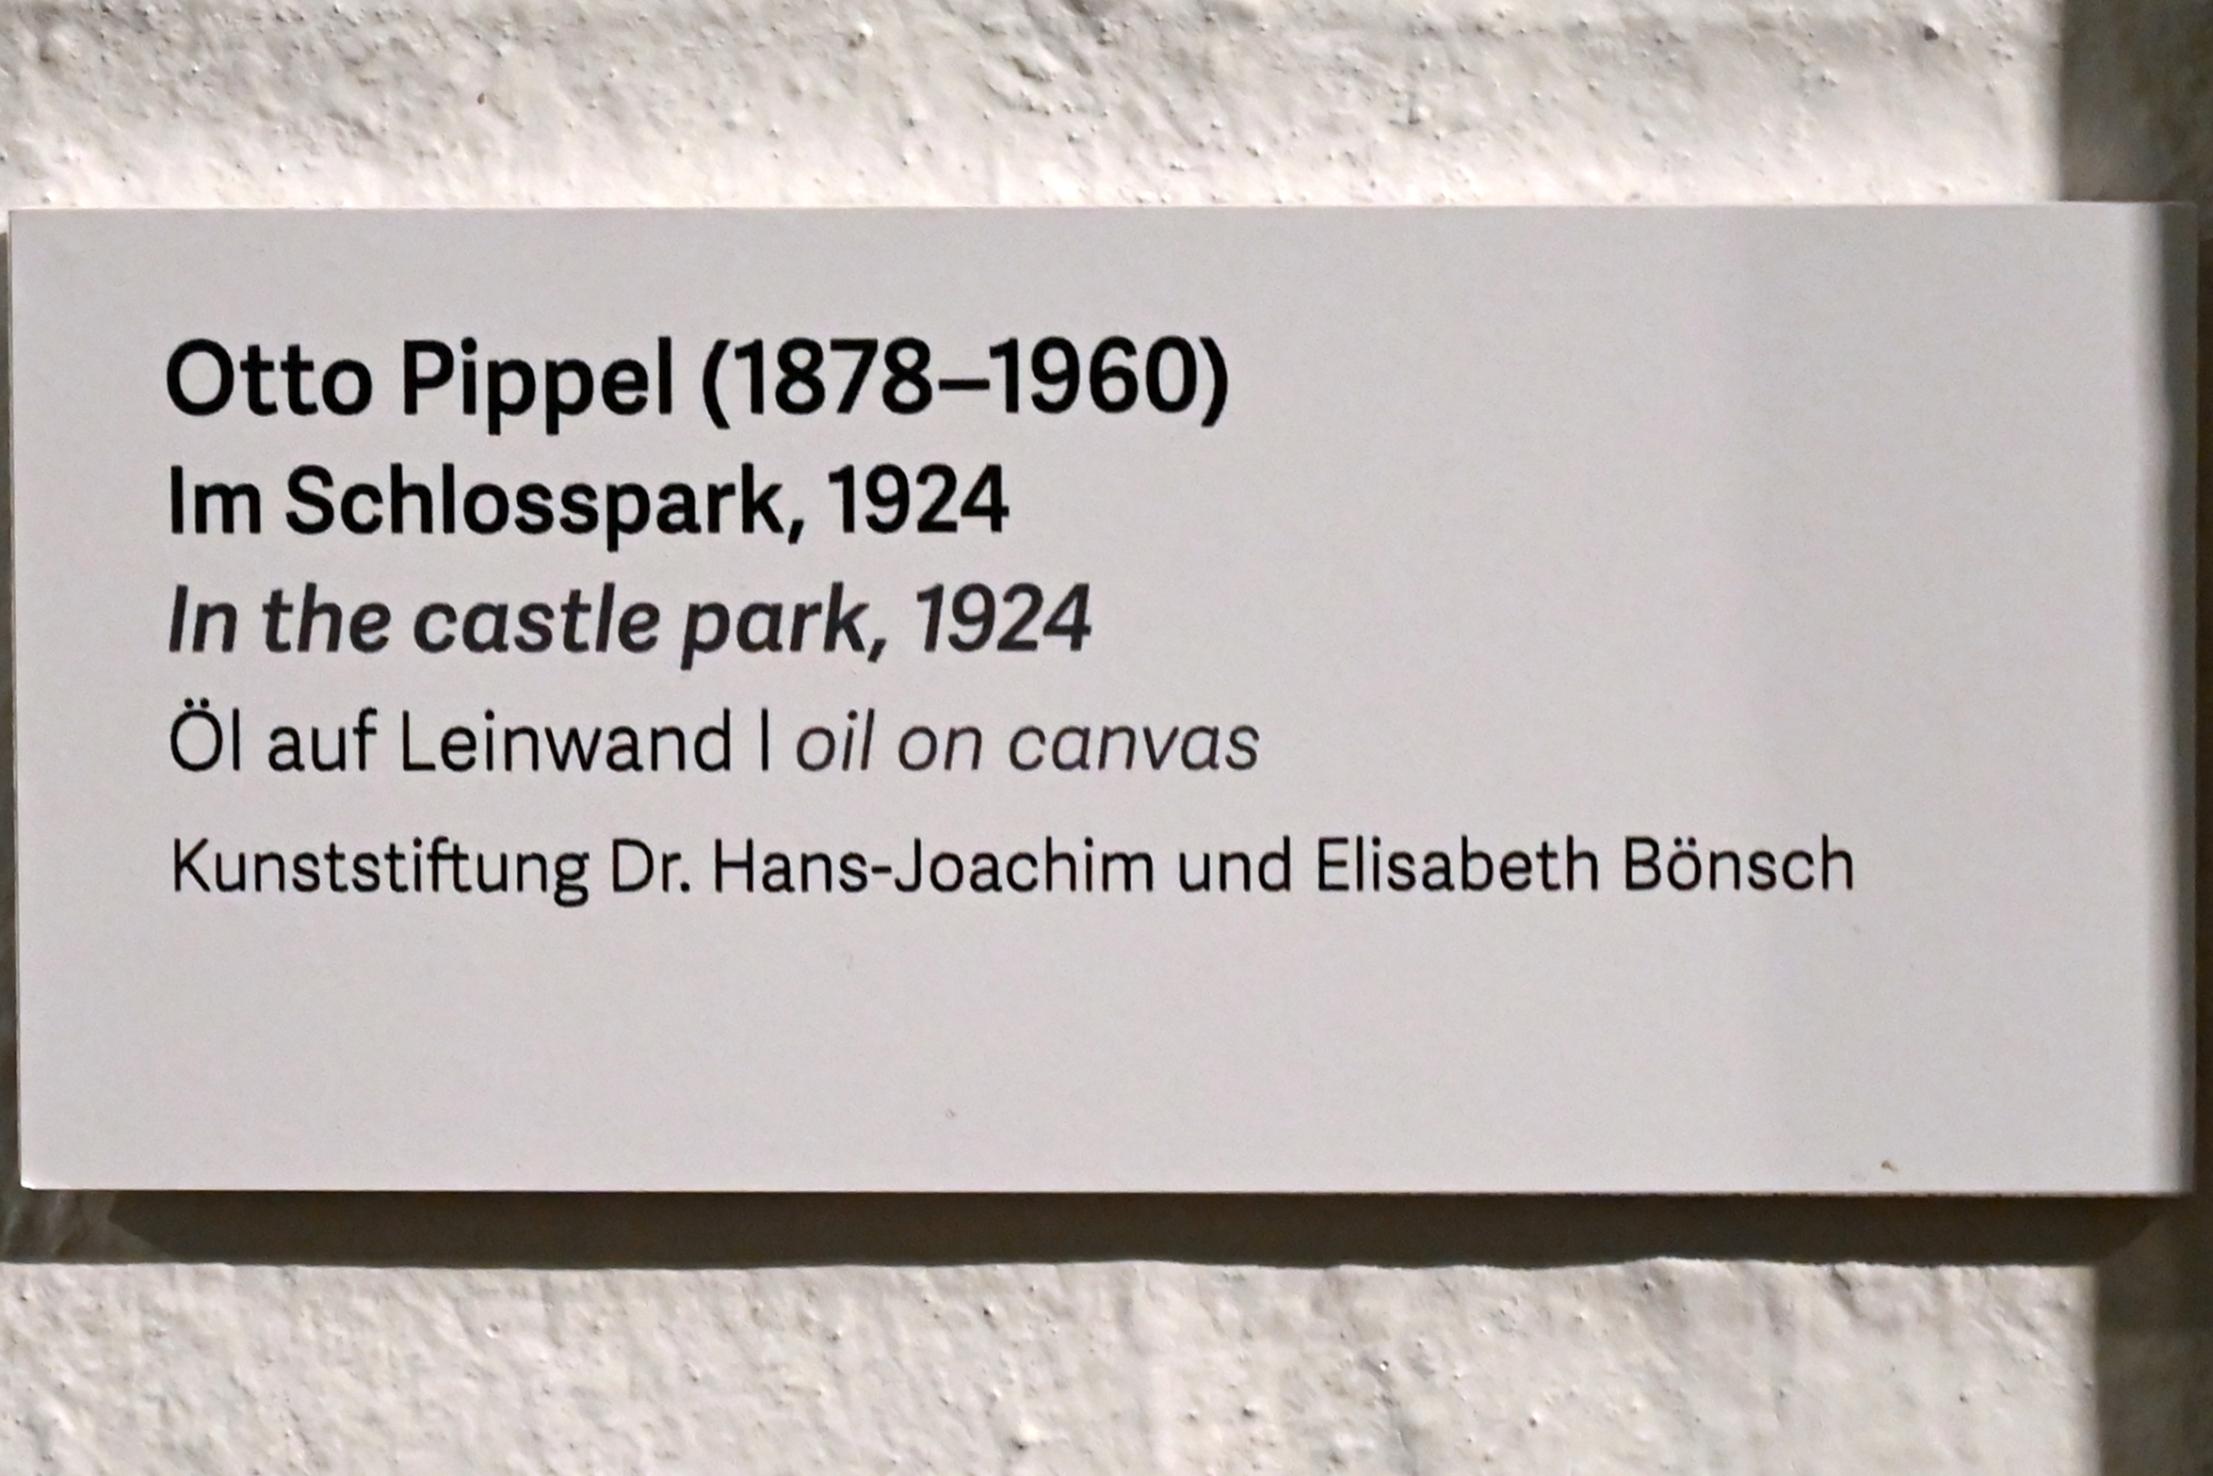 Otto Pippel (1924–1935), Im Schlosspark, Schleswig, Landesmuseum für Kunst und Kulturgeschichte, Kunst im 20. Jh., 1924, Bild 2/2